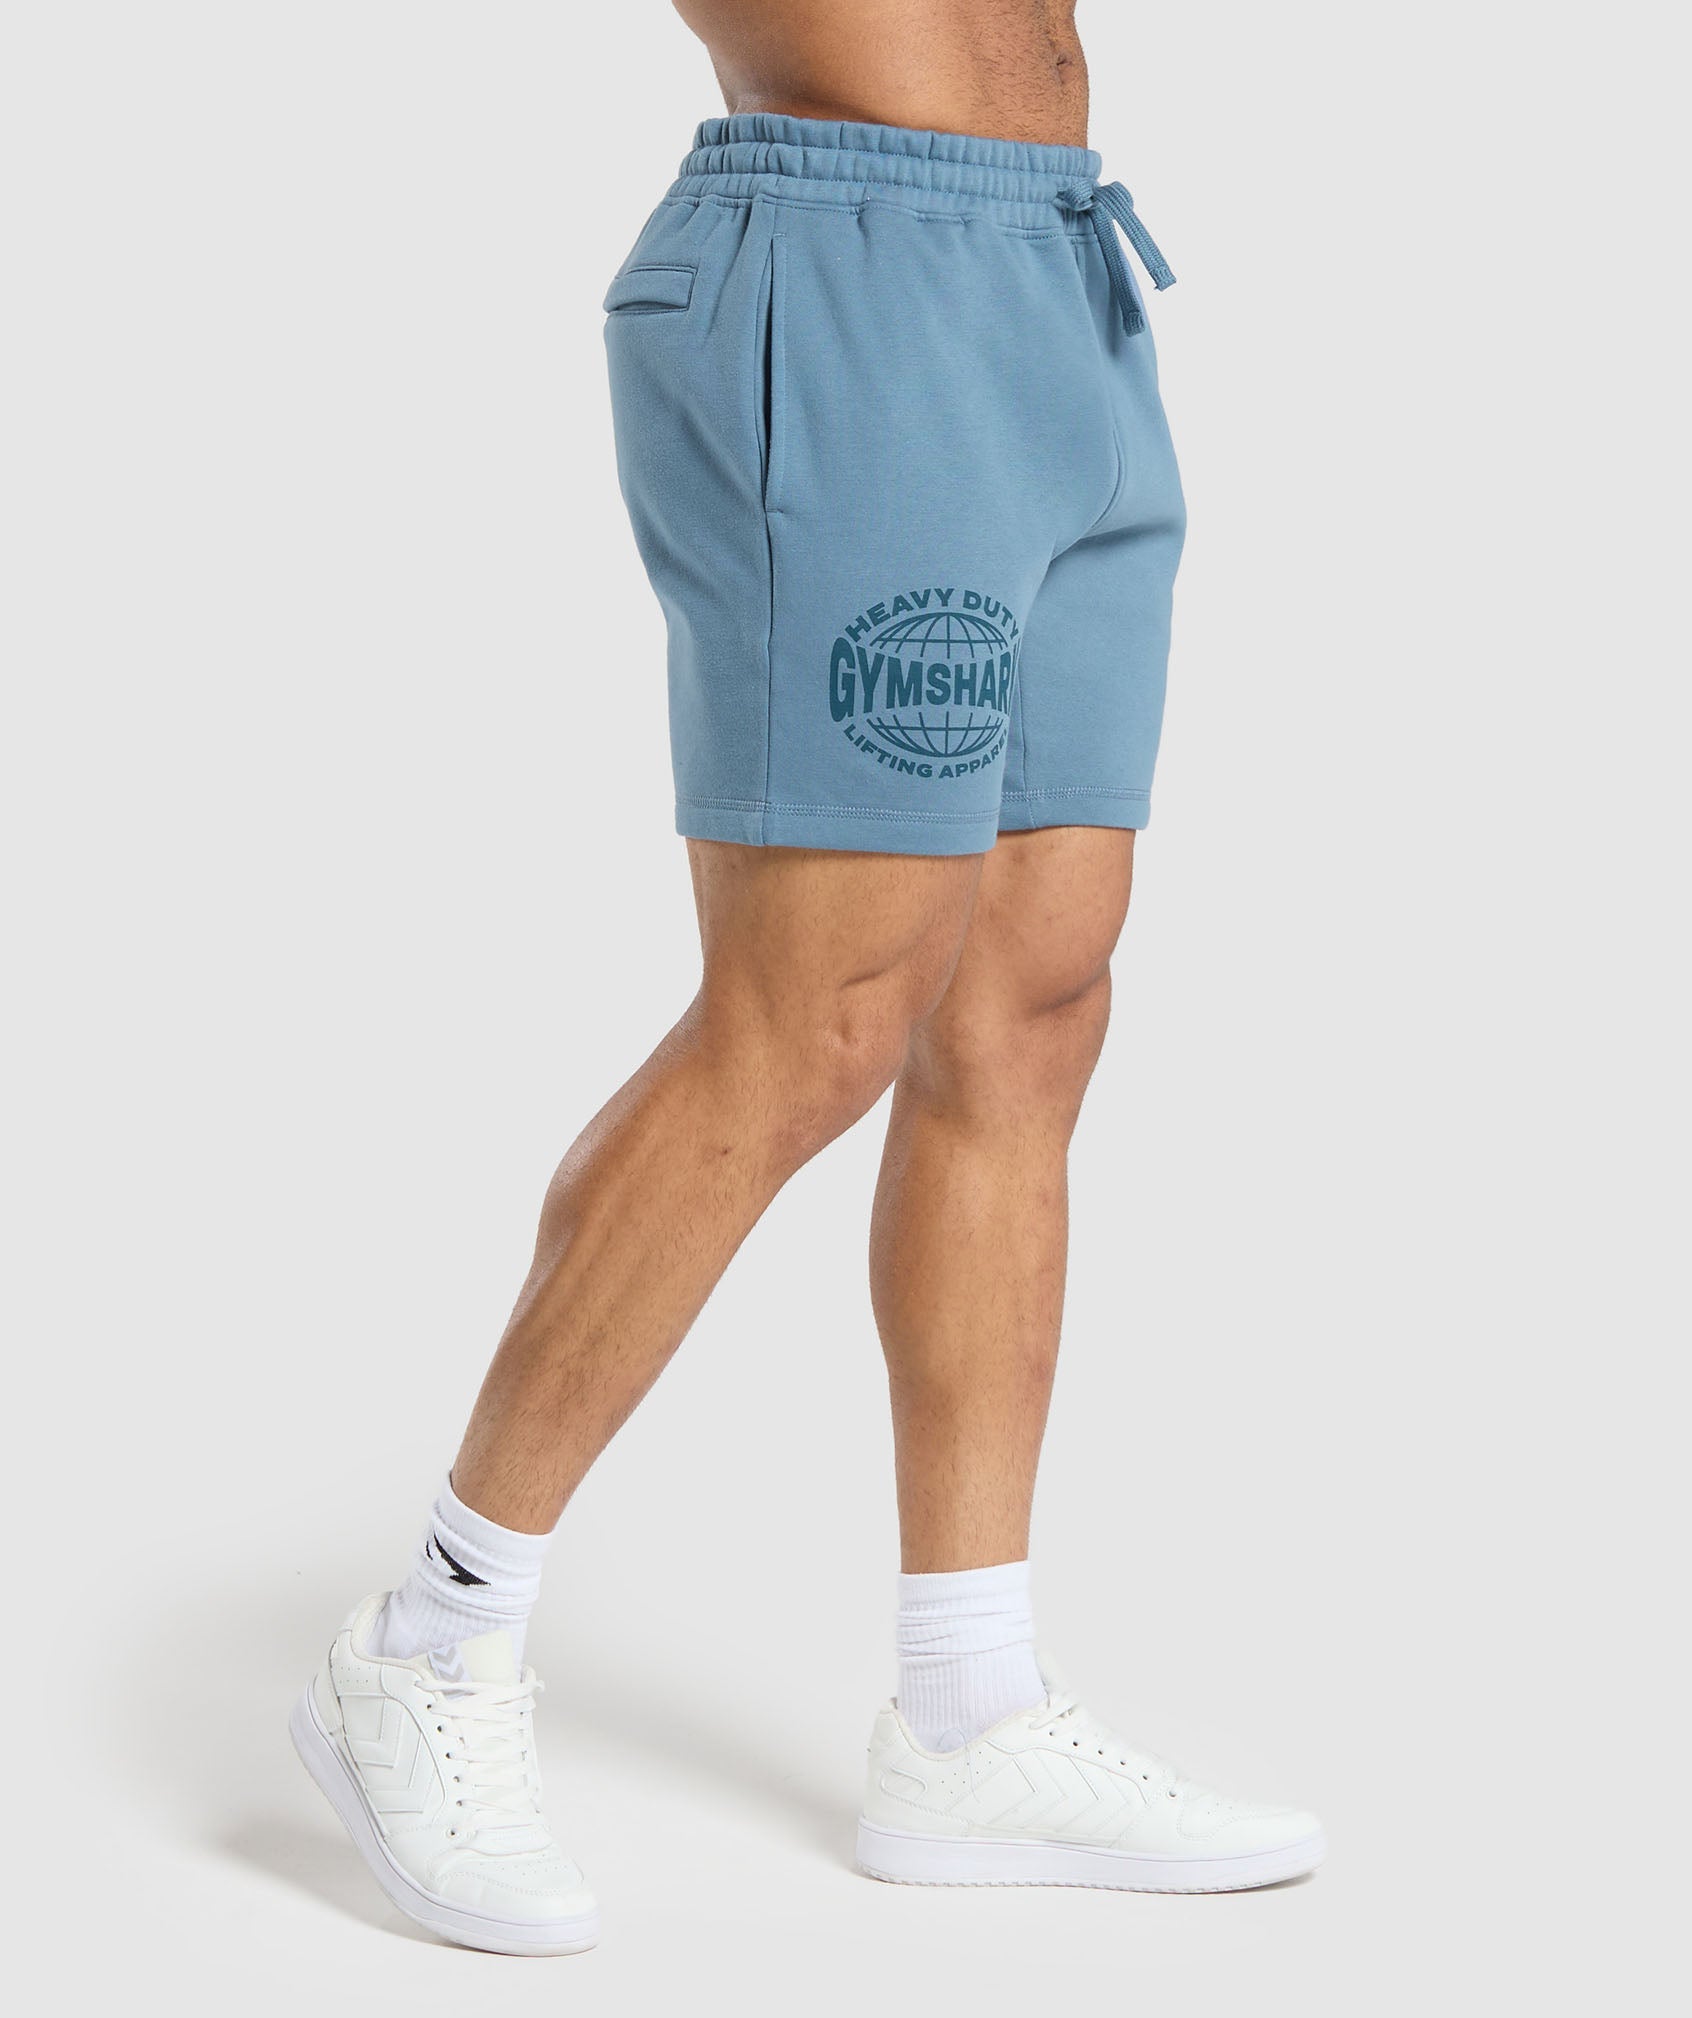 Heavy Duty Apparel 7" Shorts